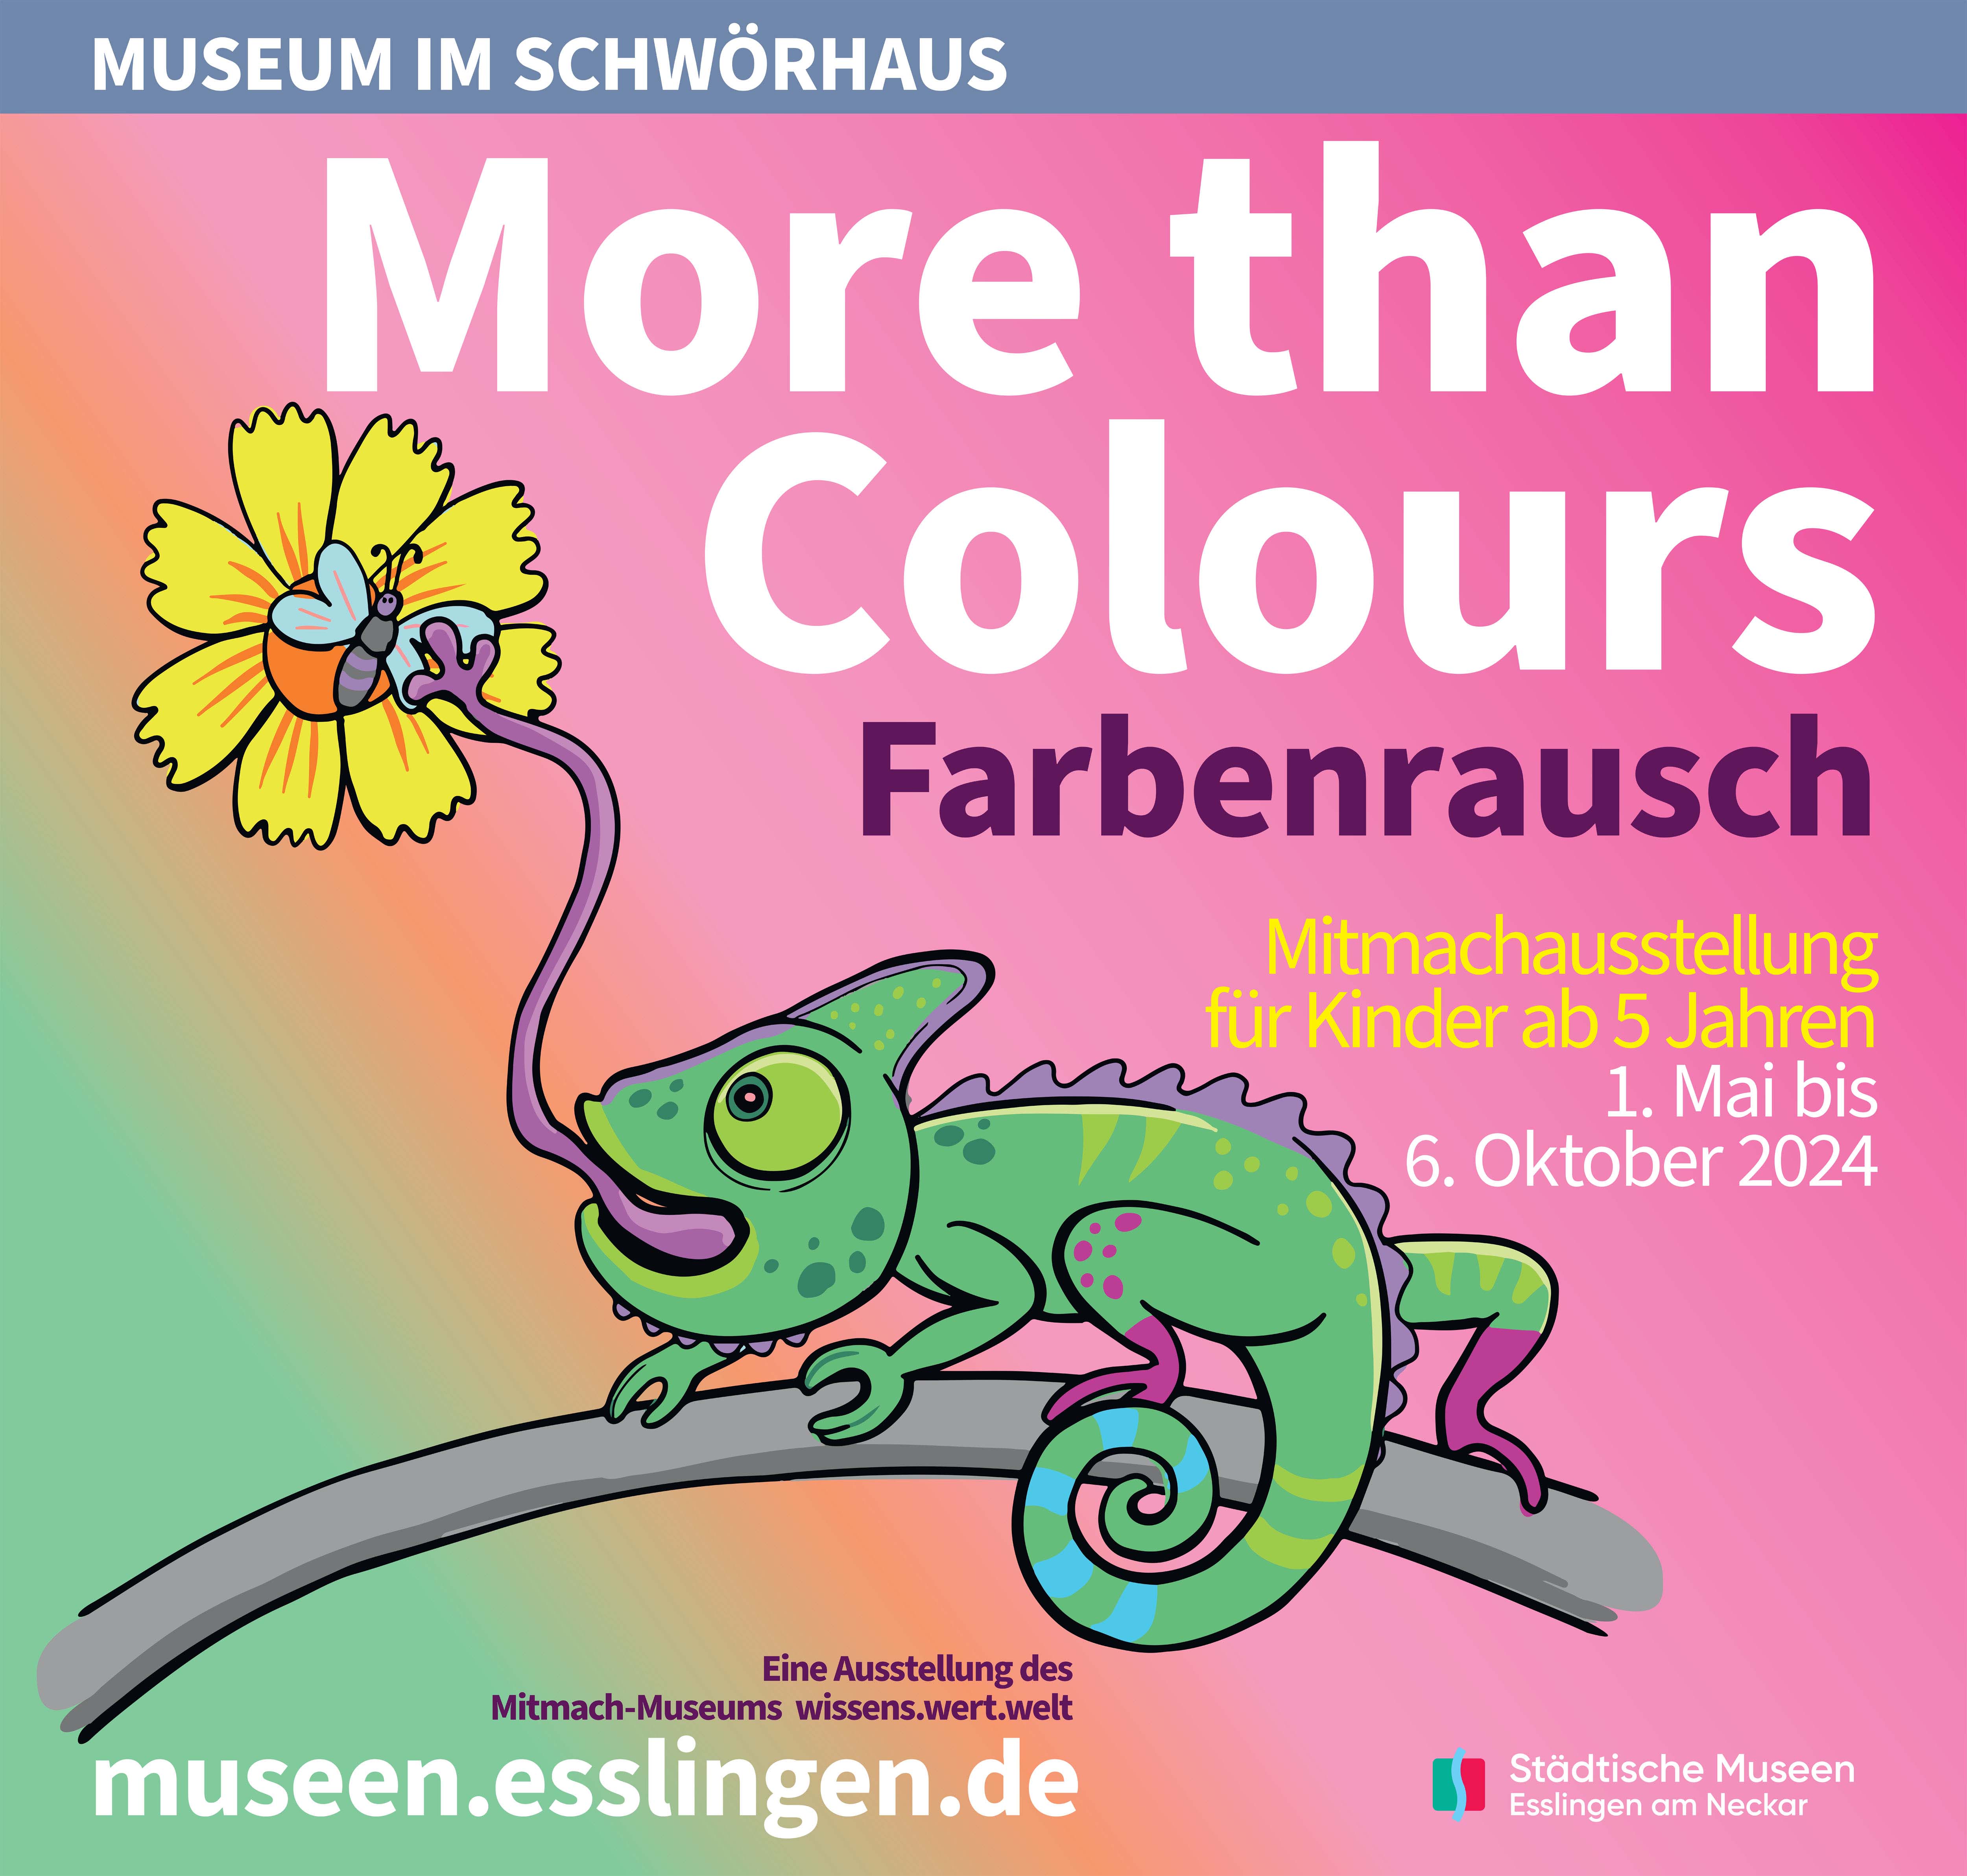 Foto (Ausschnitt): Mitmachmuseum wissens.wert.welt. Gezeichnete Pappfiguren wie Schlangen in vielen Farben.